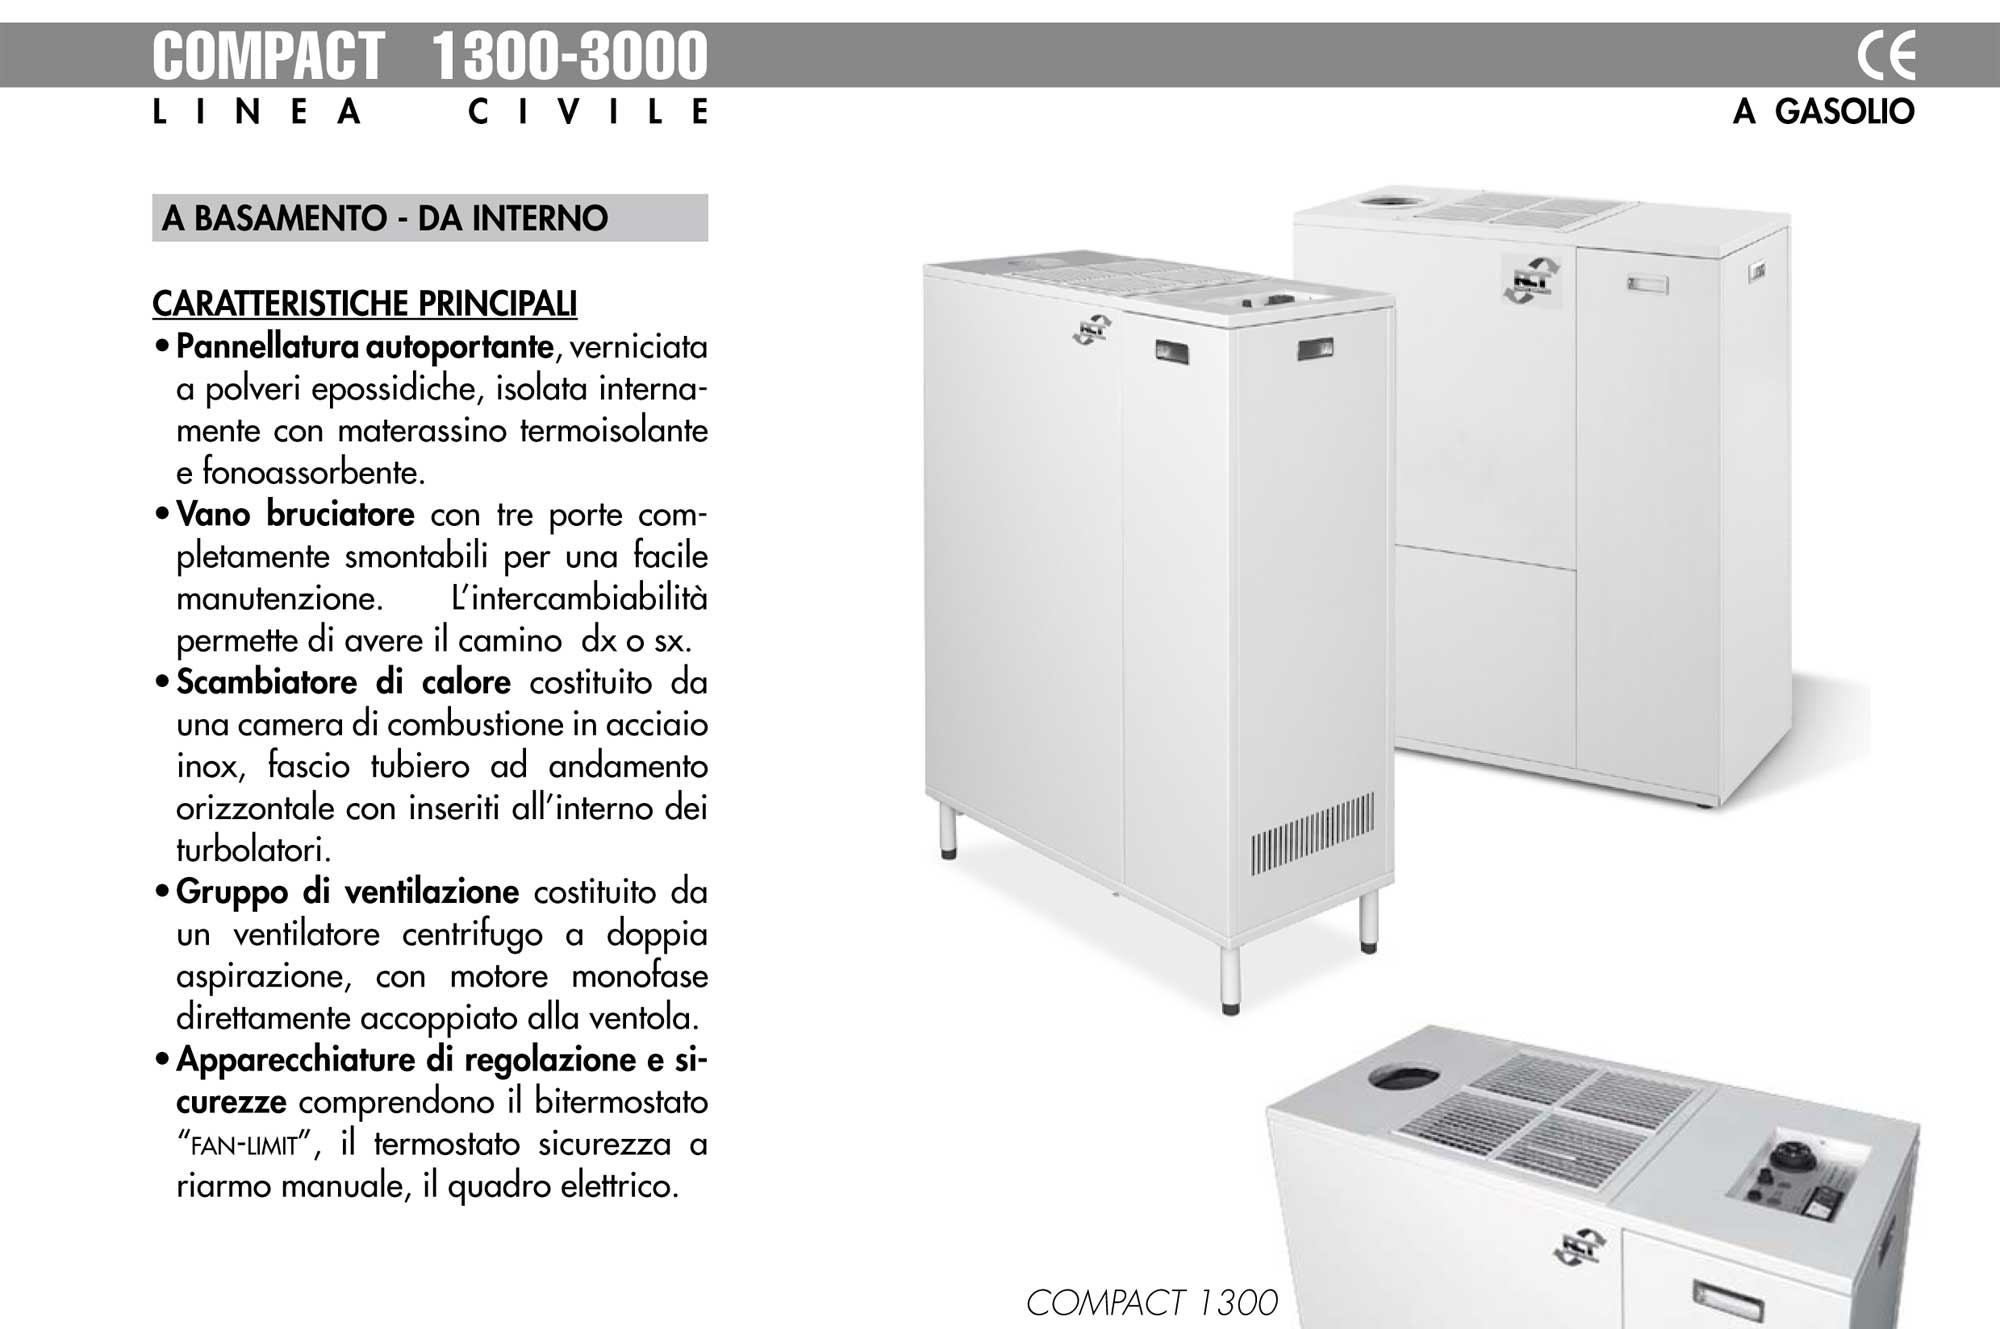 Hot air generators for civil engineering COMPACT 1300-3000